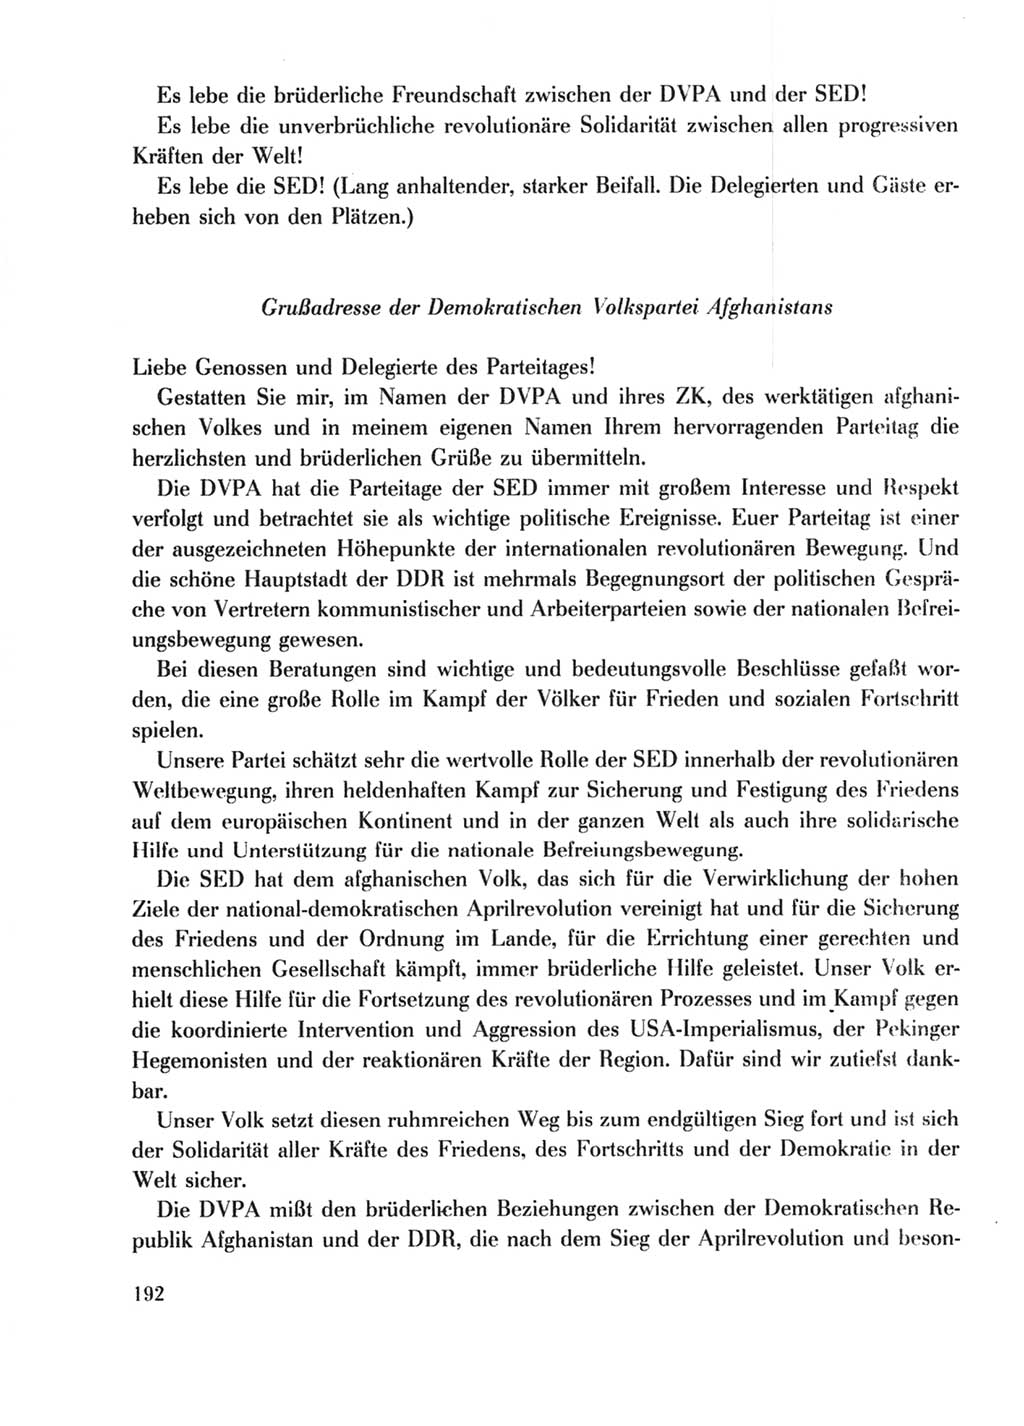 Protokoll der Verhandlungen des Ⅹ. Parteitages der Sozialistischen Einheitspartei Deutschlands (SED) [Deutsche Demokratische Republik (DDR)] 1981, Band 2, Seite 192 (Prot. Verh. Ⅹ. PT SED DDR 1981, Bd. 2, S. 192)